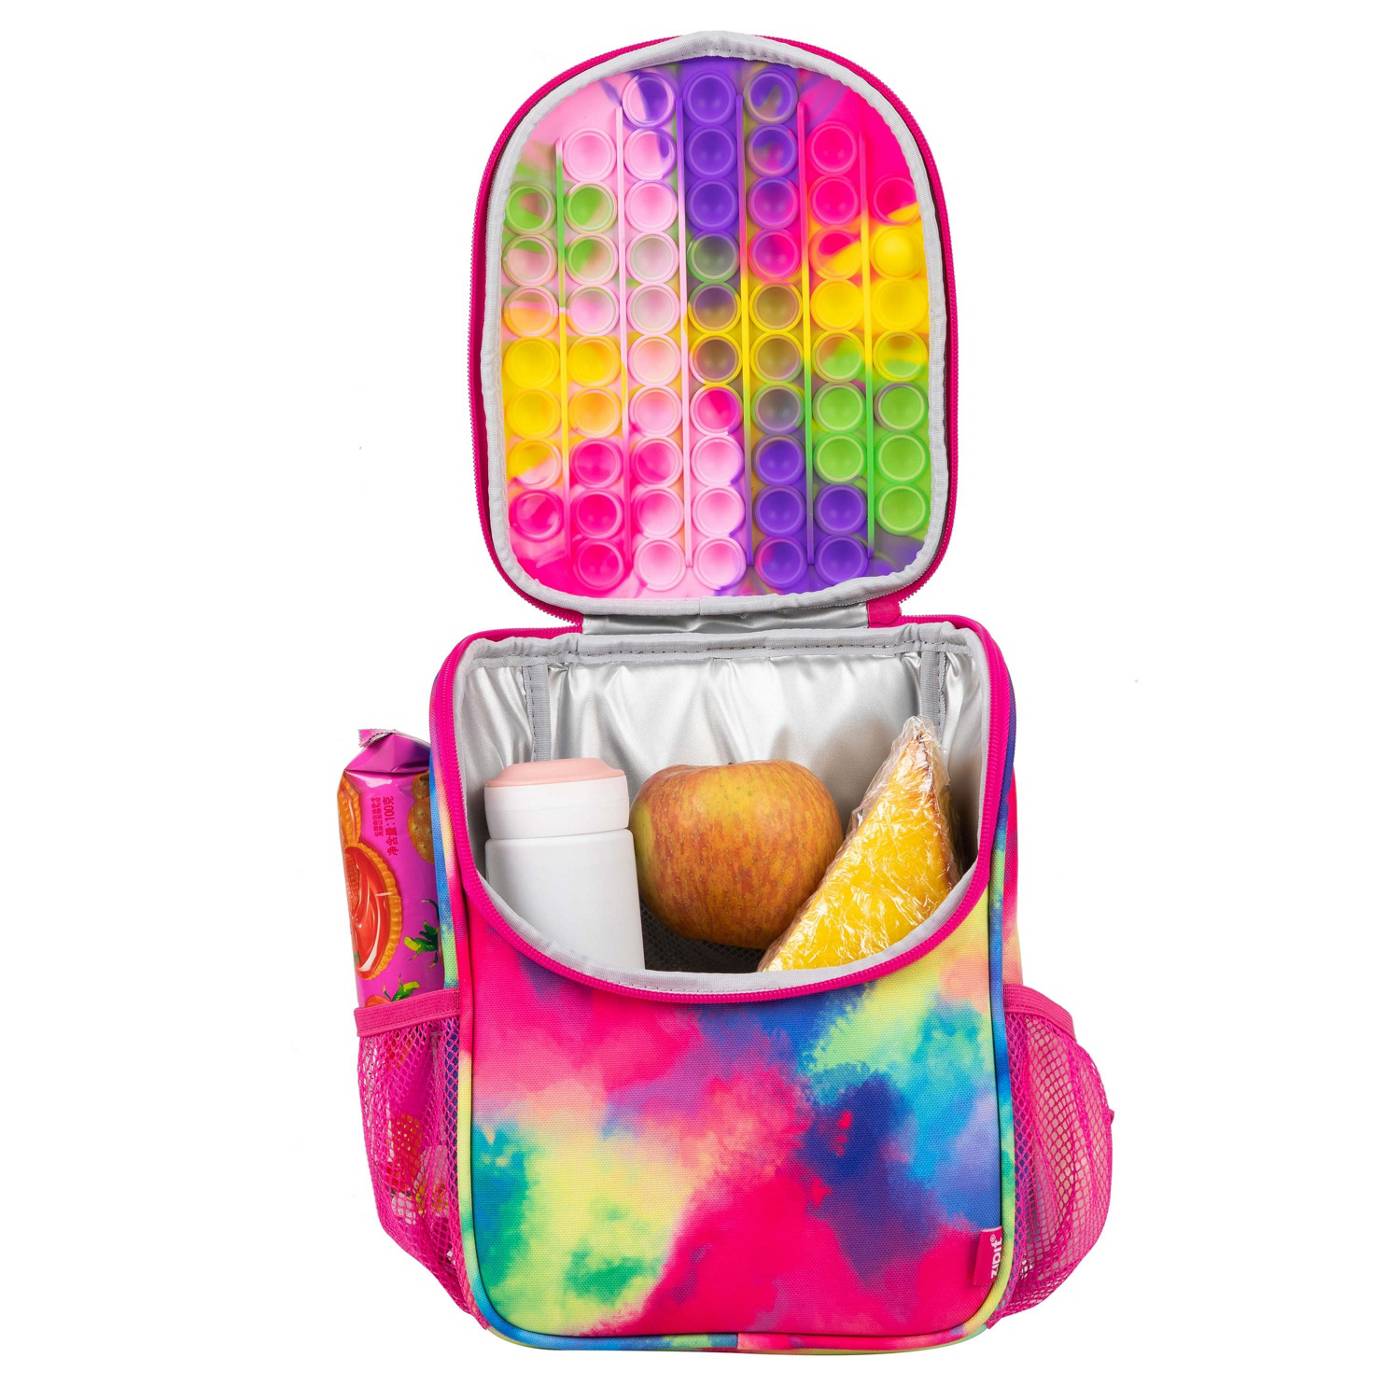 ZIPIT Zip n' Pop Mini Backpack - Tie Dye; image 3 of 5